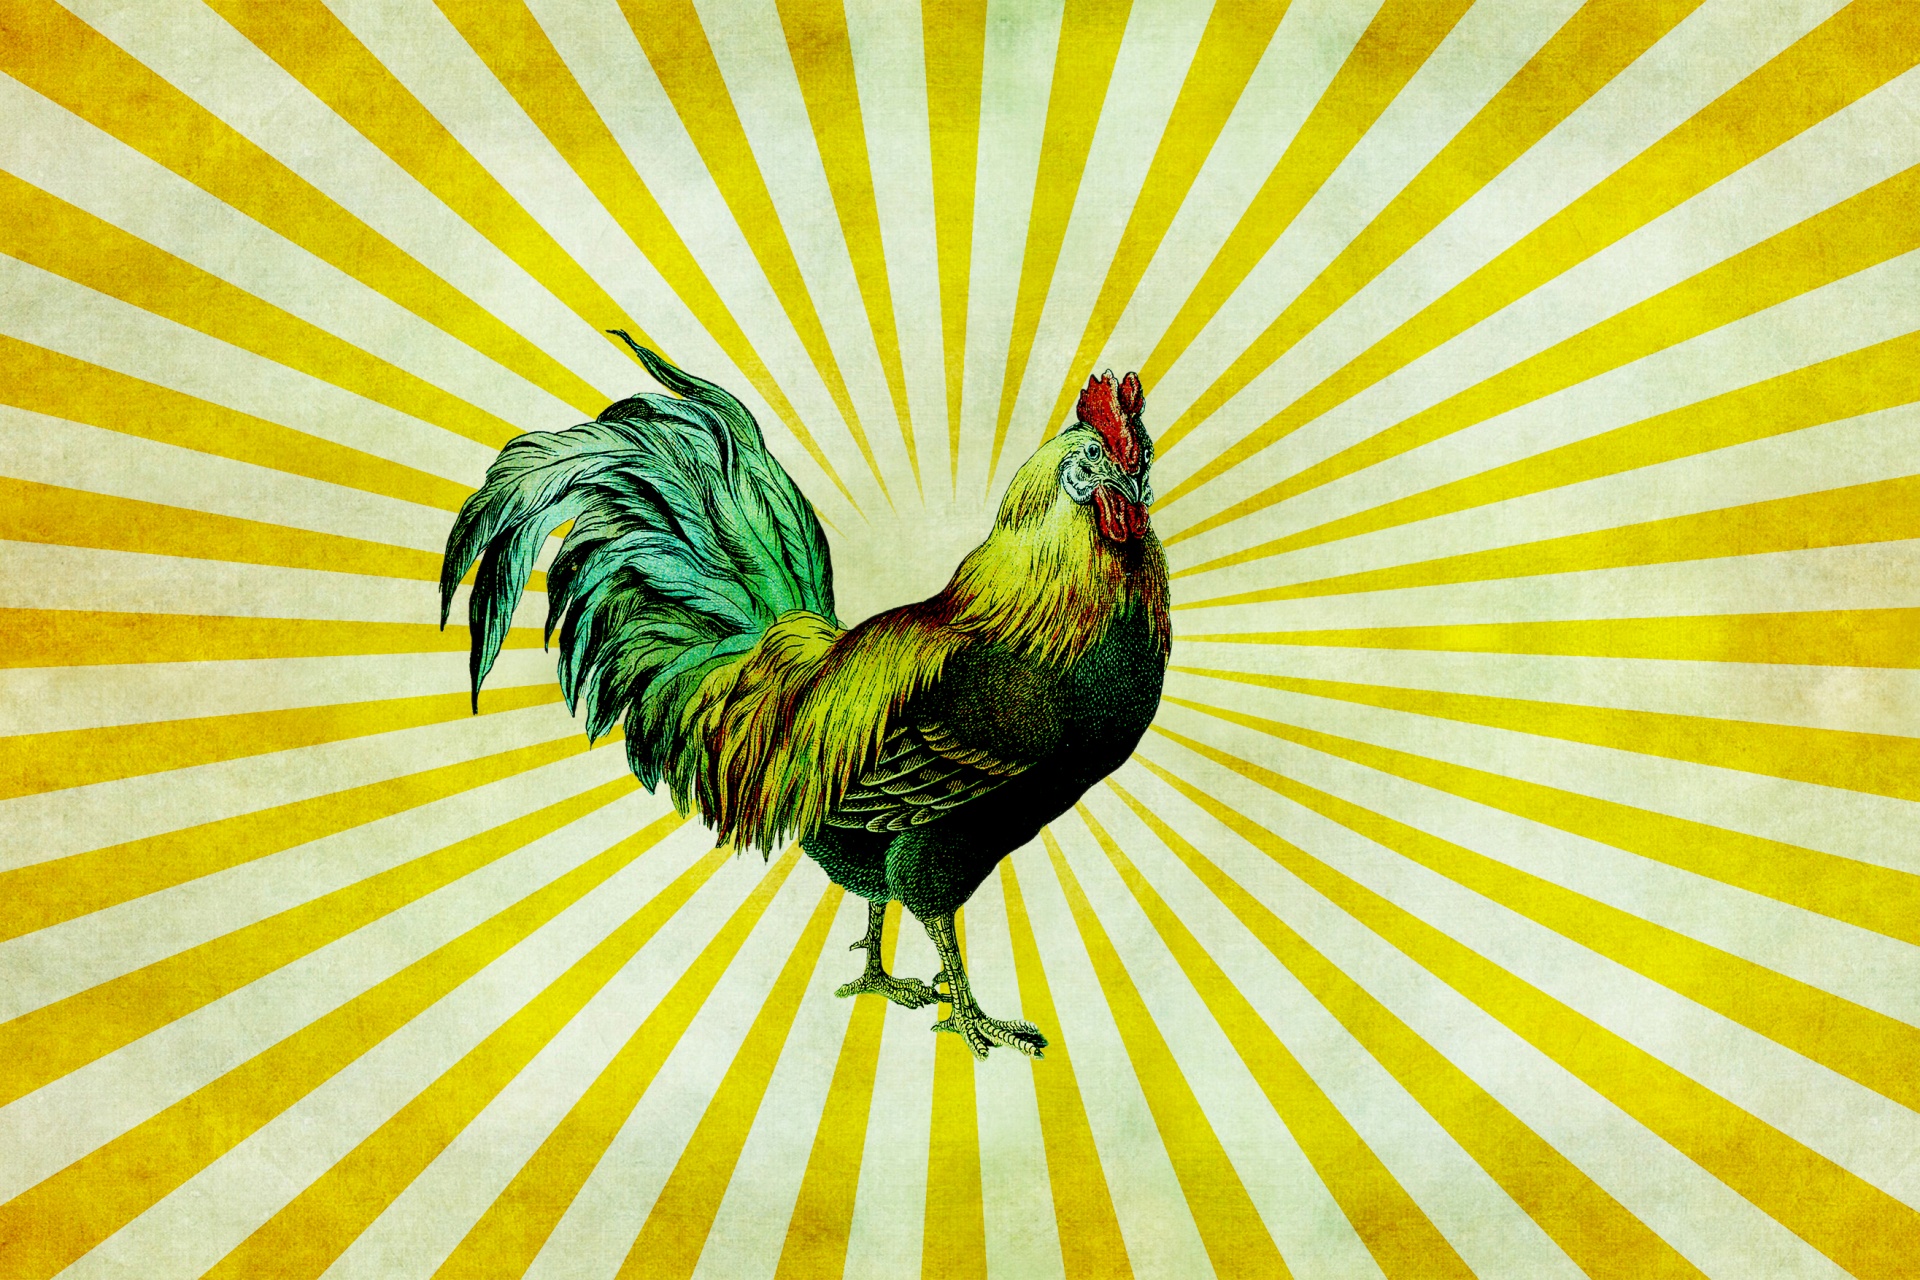 Vintage rooster on sunburst background wallpaper